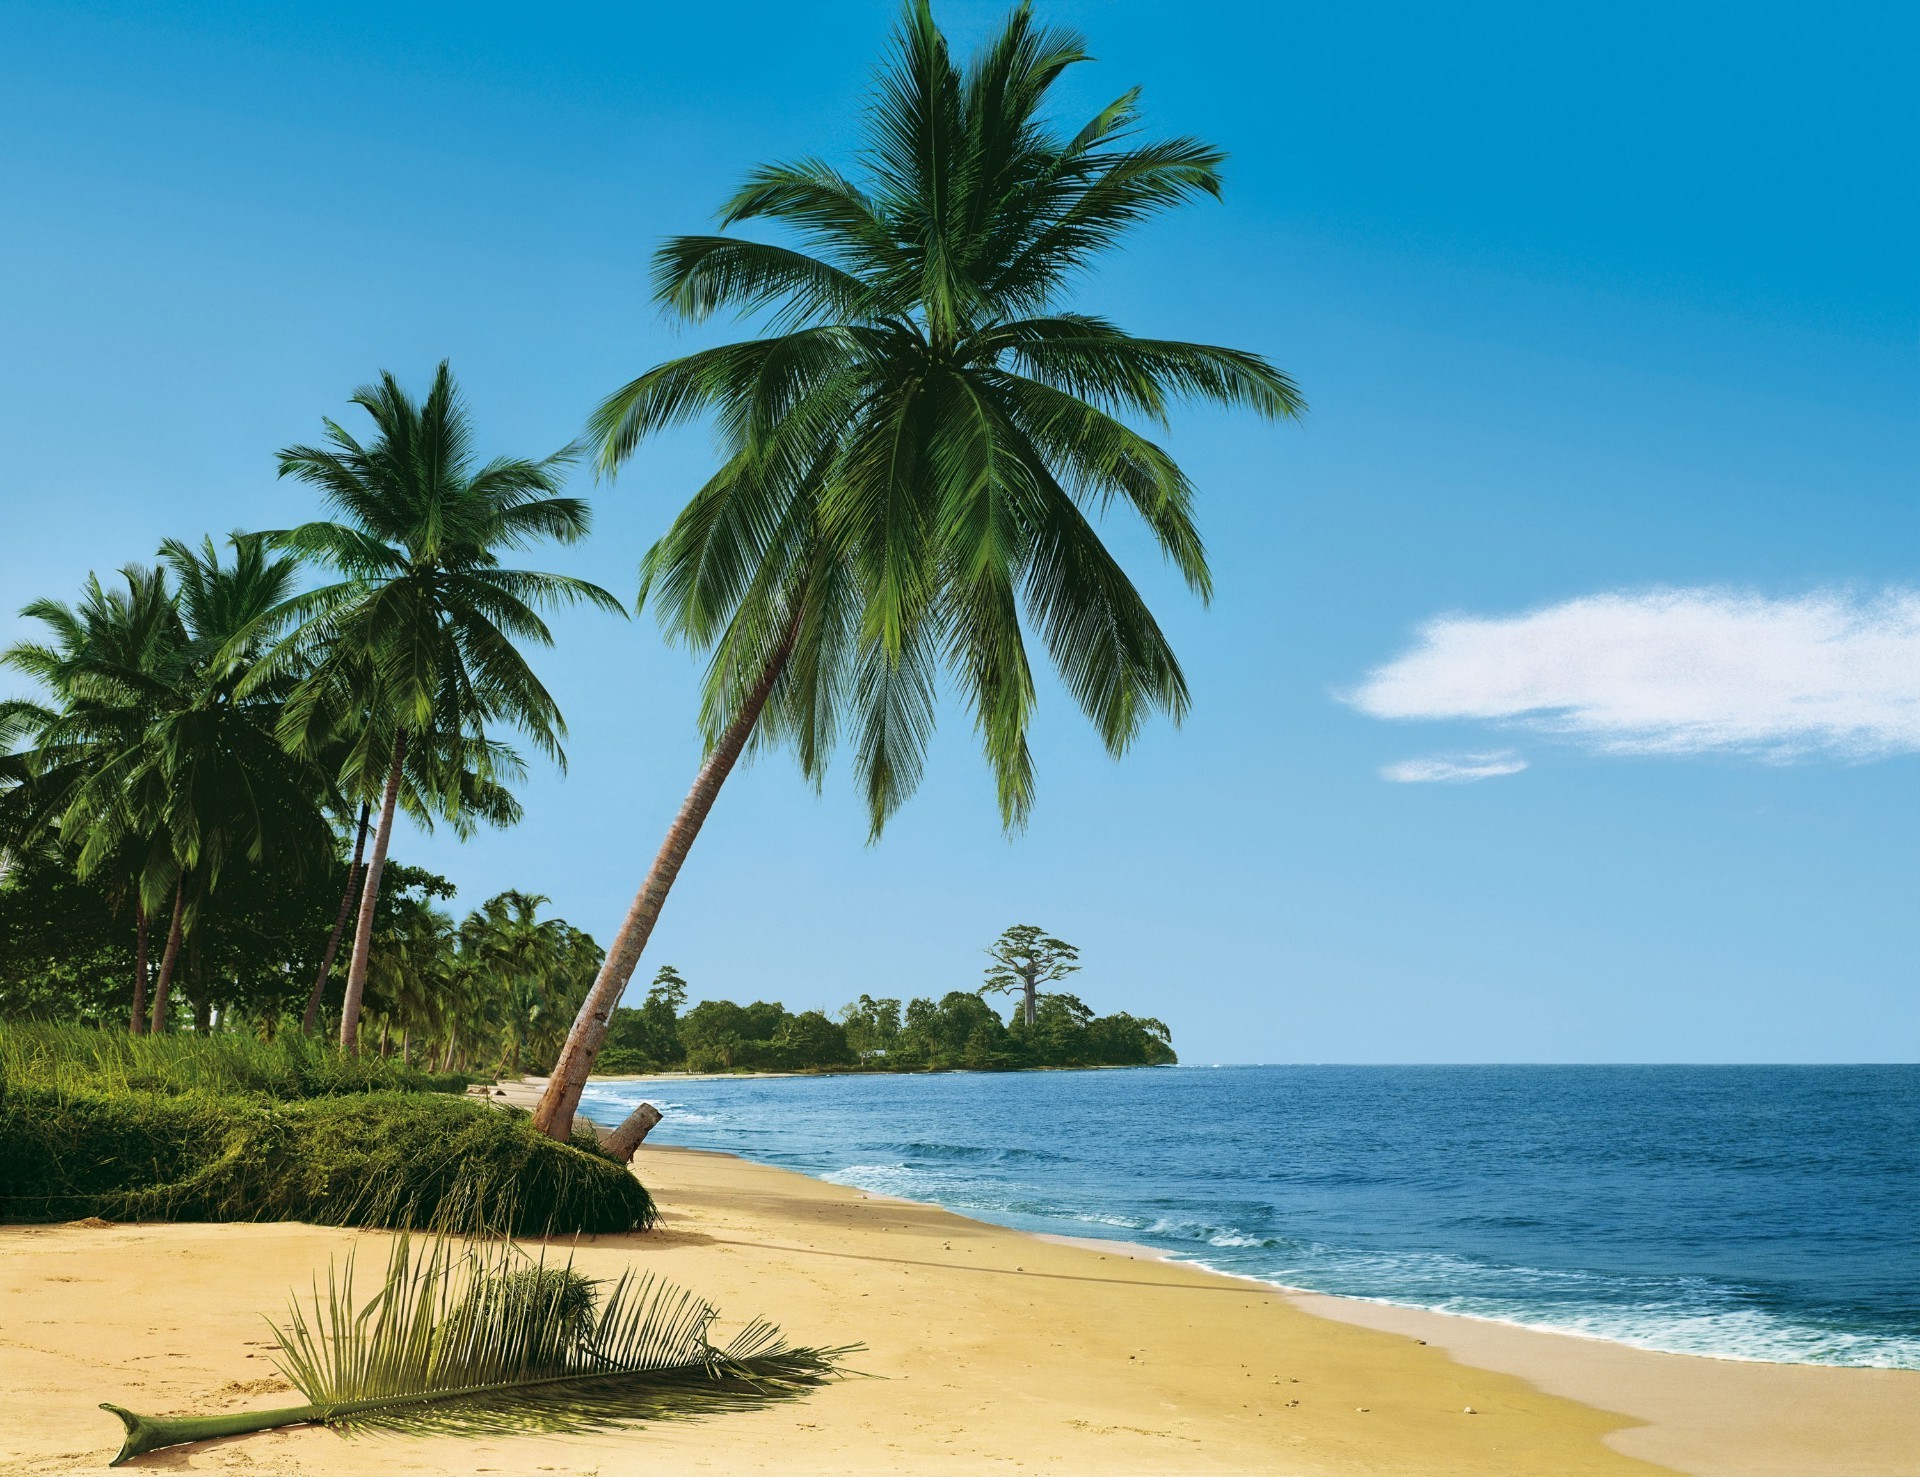 пальмы и тропики тропический песок пляж идиллия моря лето остров релаксация путешествия ладони отпуск экзотические рай курорт океан солнце пейзаж бирюза воды кокосовое